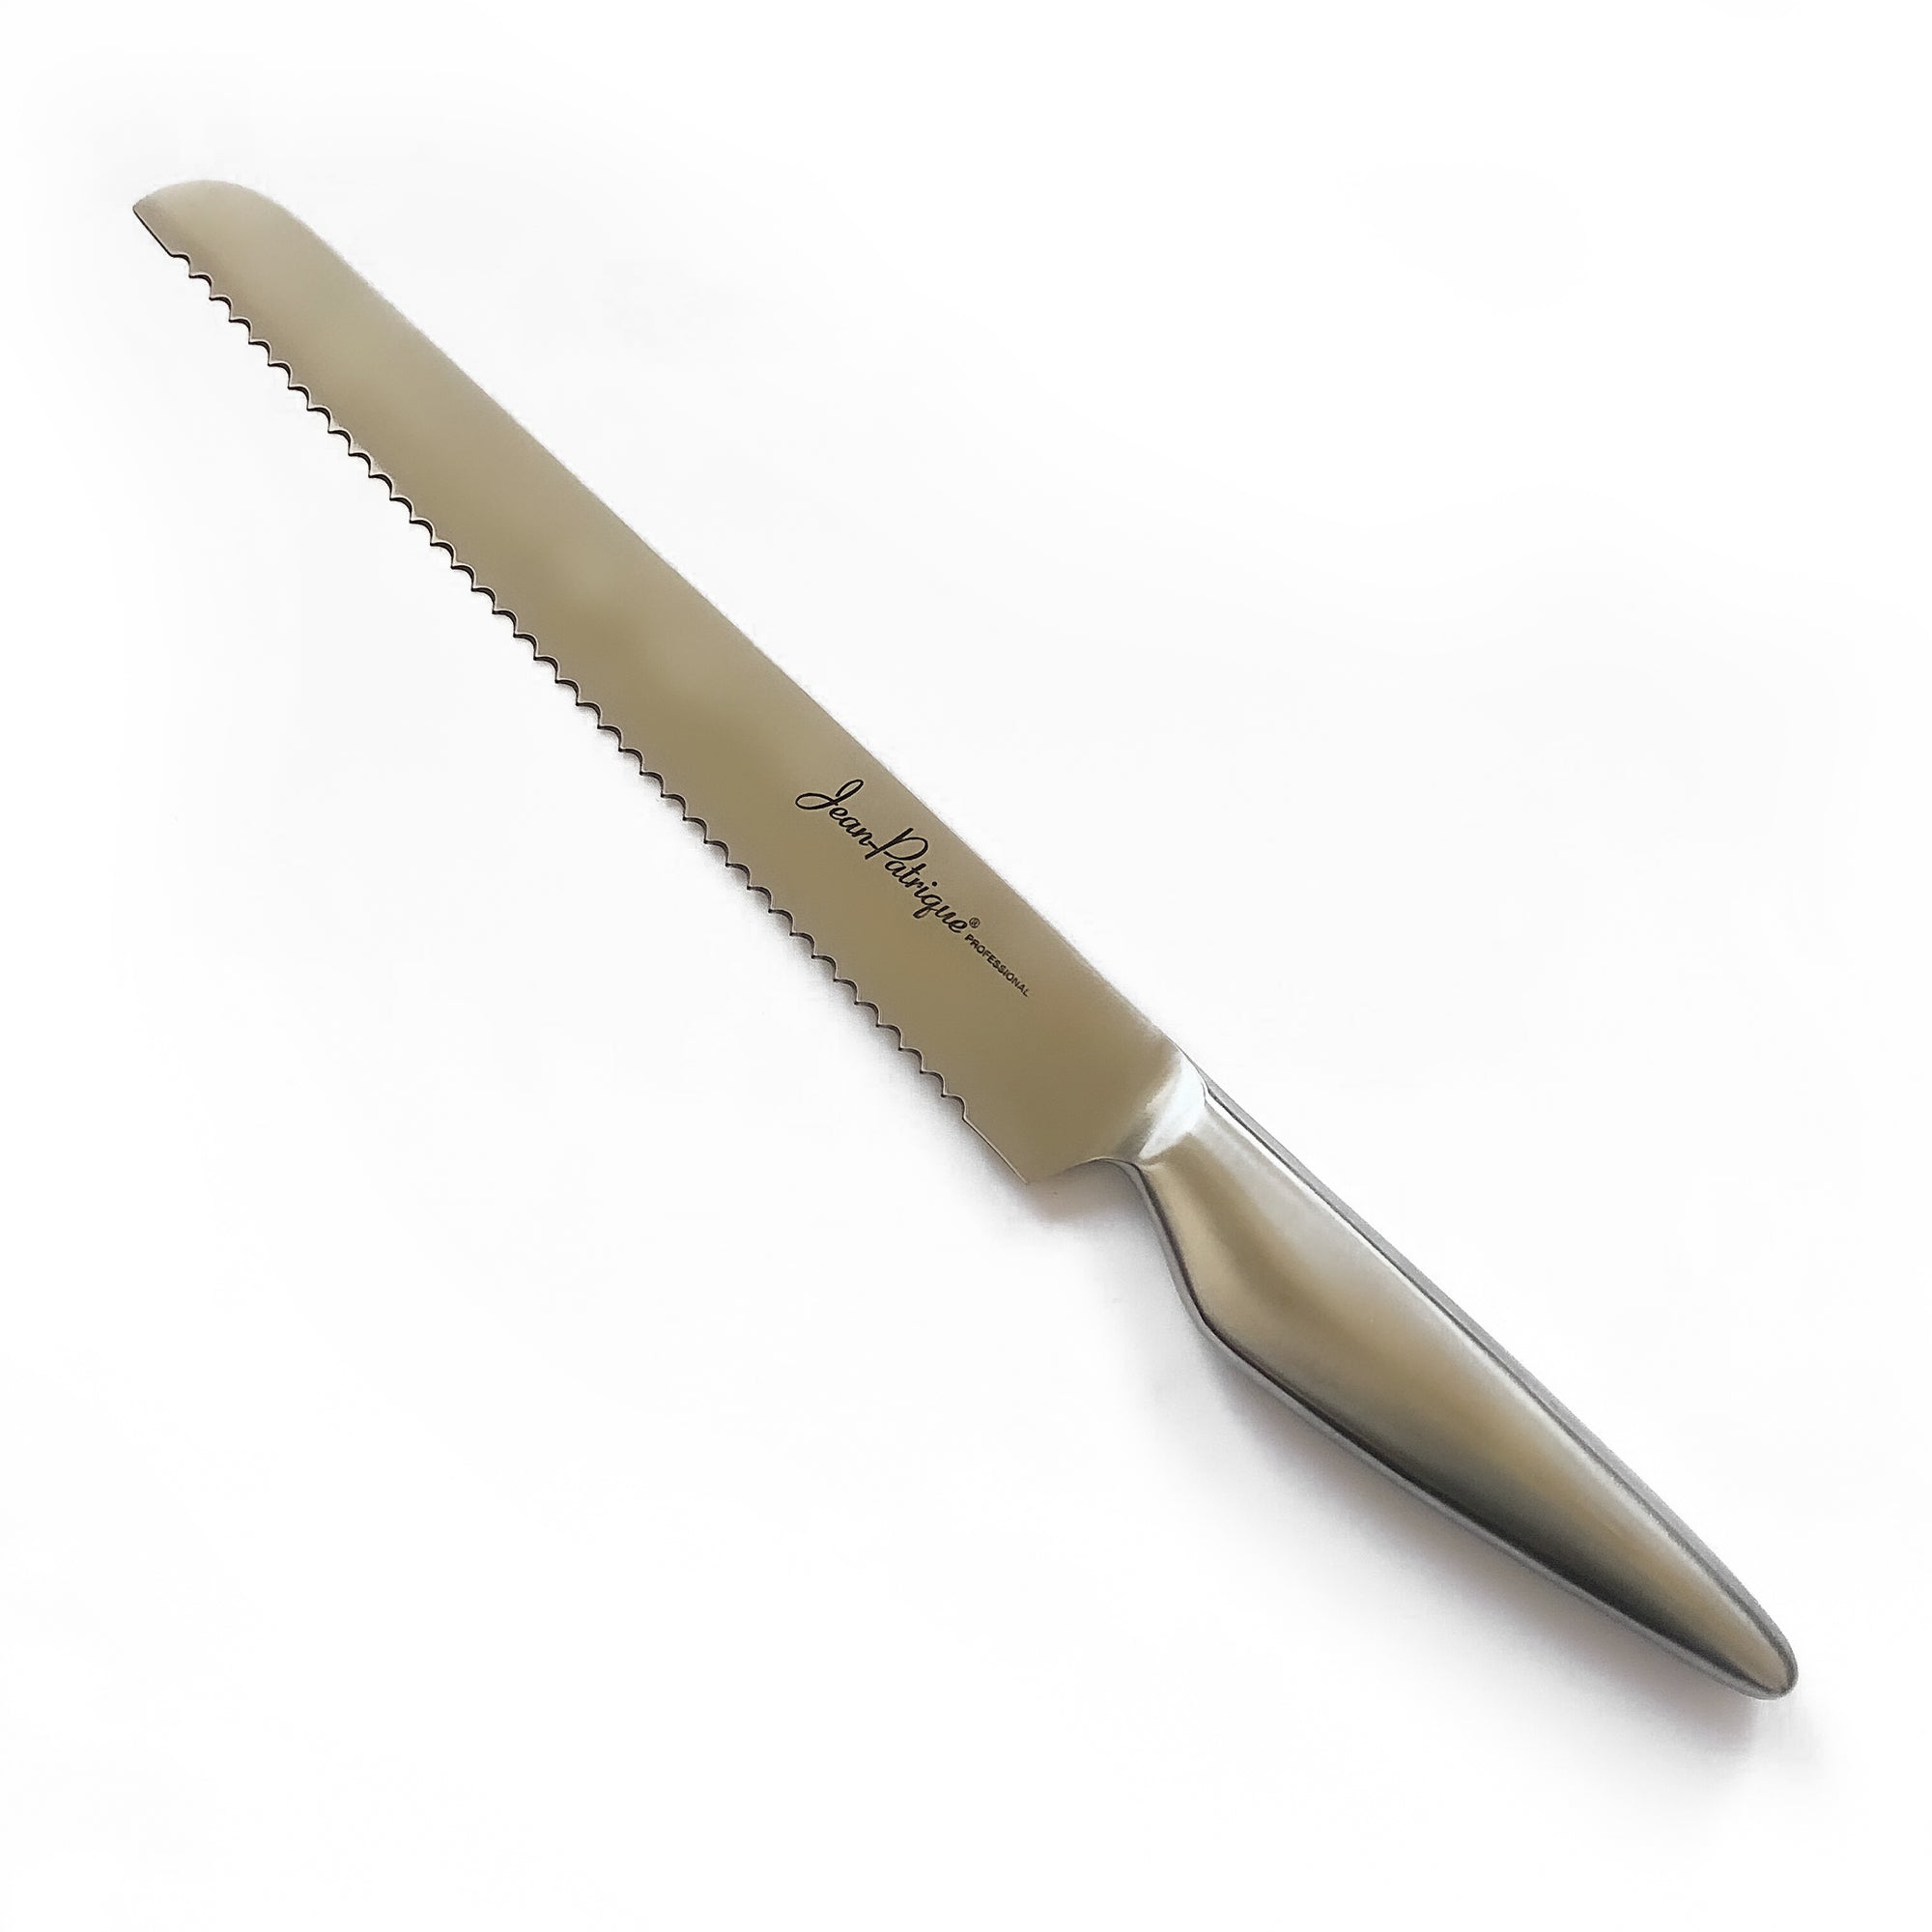 5-Piece Titanium Knife Set - White/Gold Handles – Jean Patrique  Professional Cookware